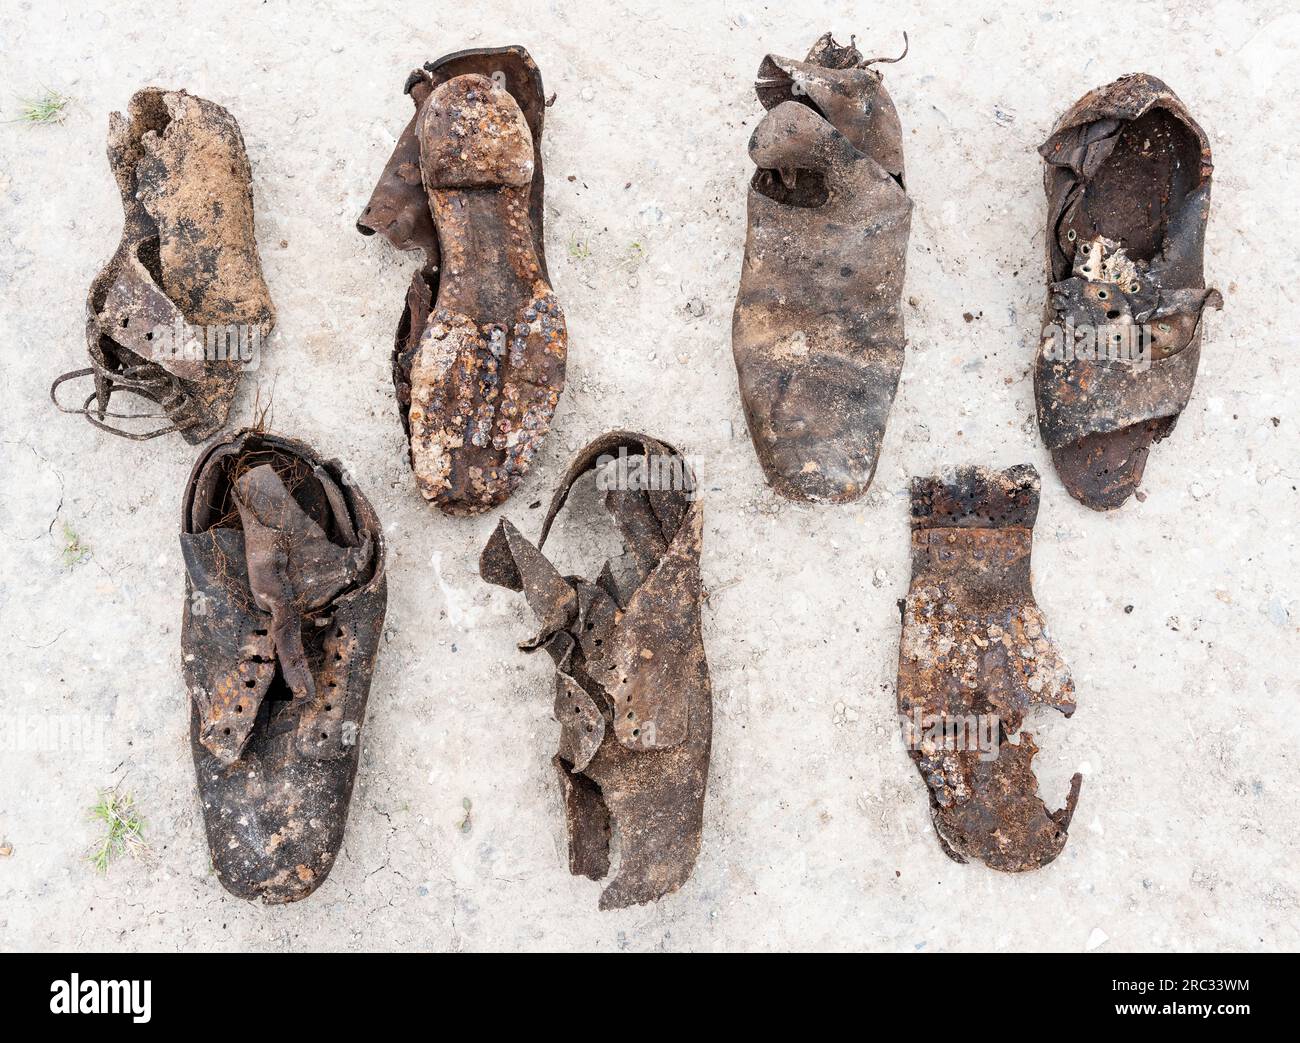 Eine Sammlung viktorianischer Schuhe, die unter dem Erdboden einer Joiners-Werkstatt vergraben wurden, um böse Geister abzuwehren oder Glück zu bringen, East Yorkshire, Großbritannien Stockfoto